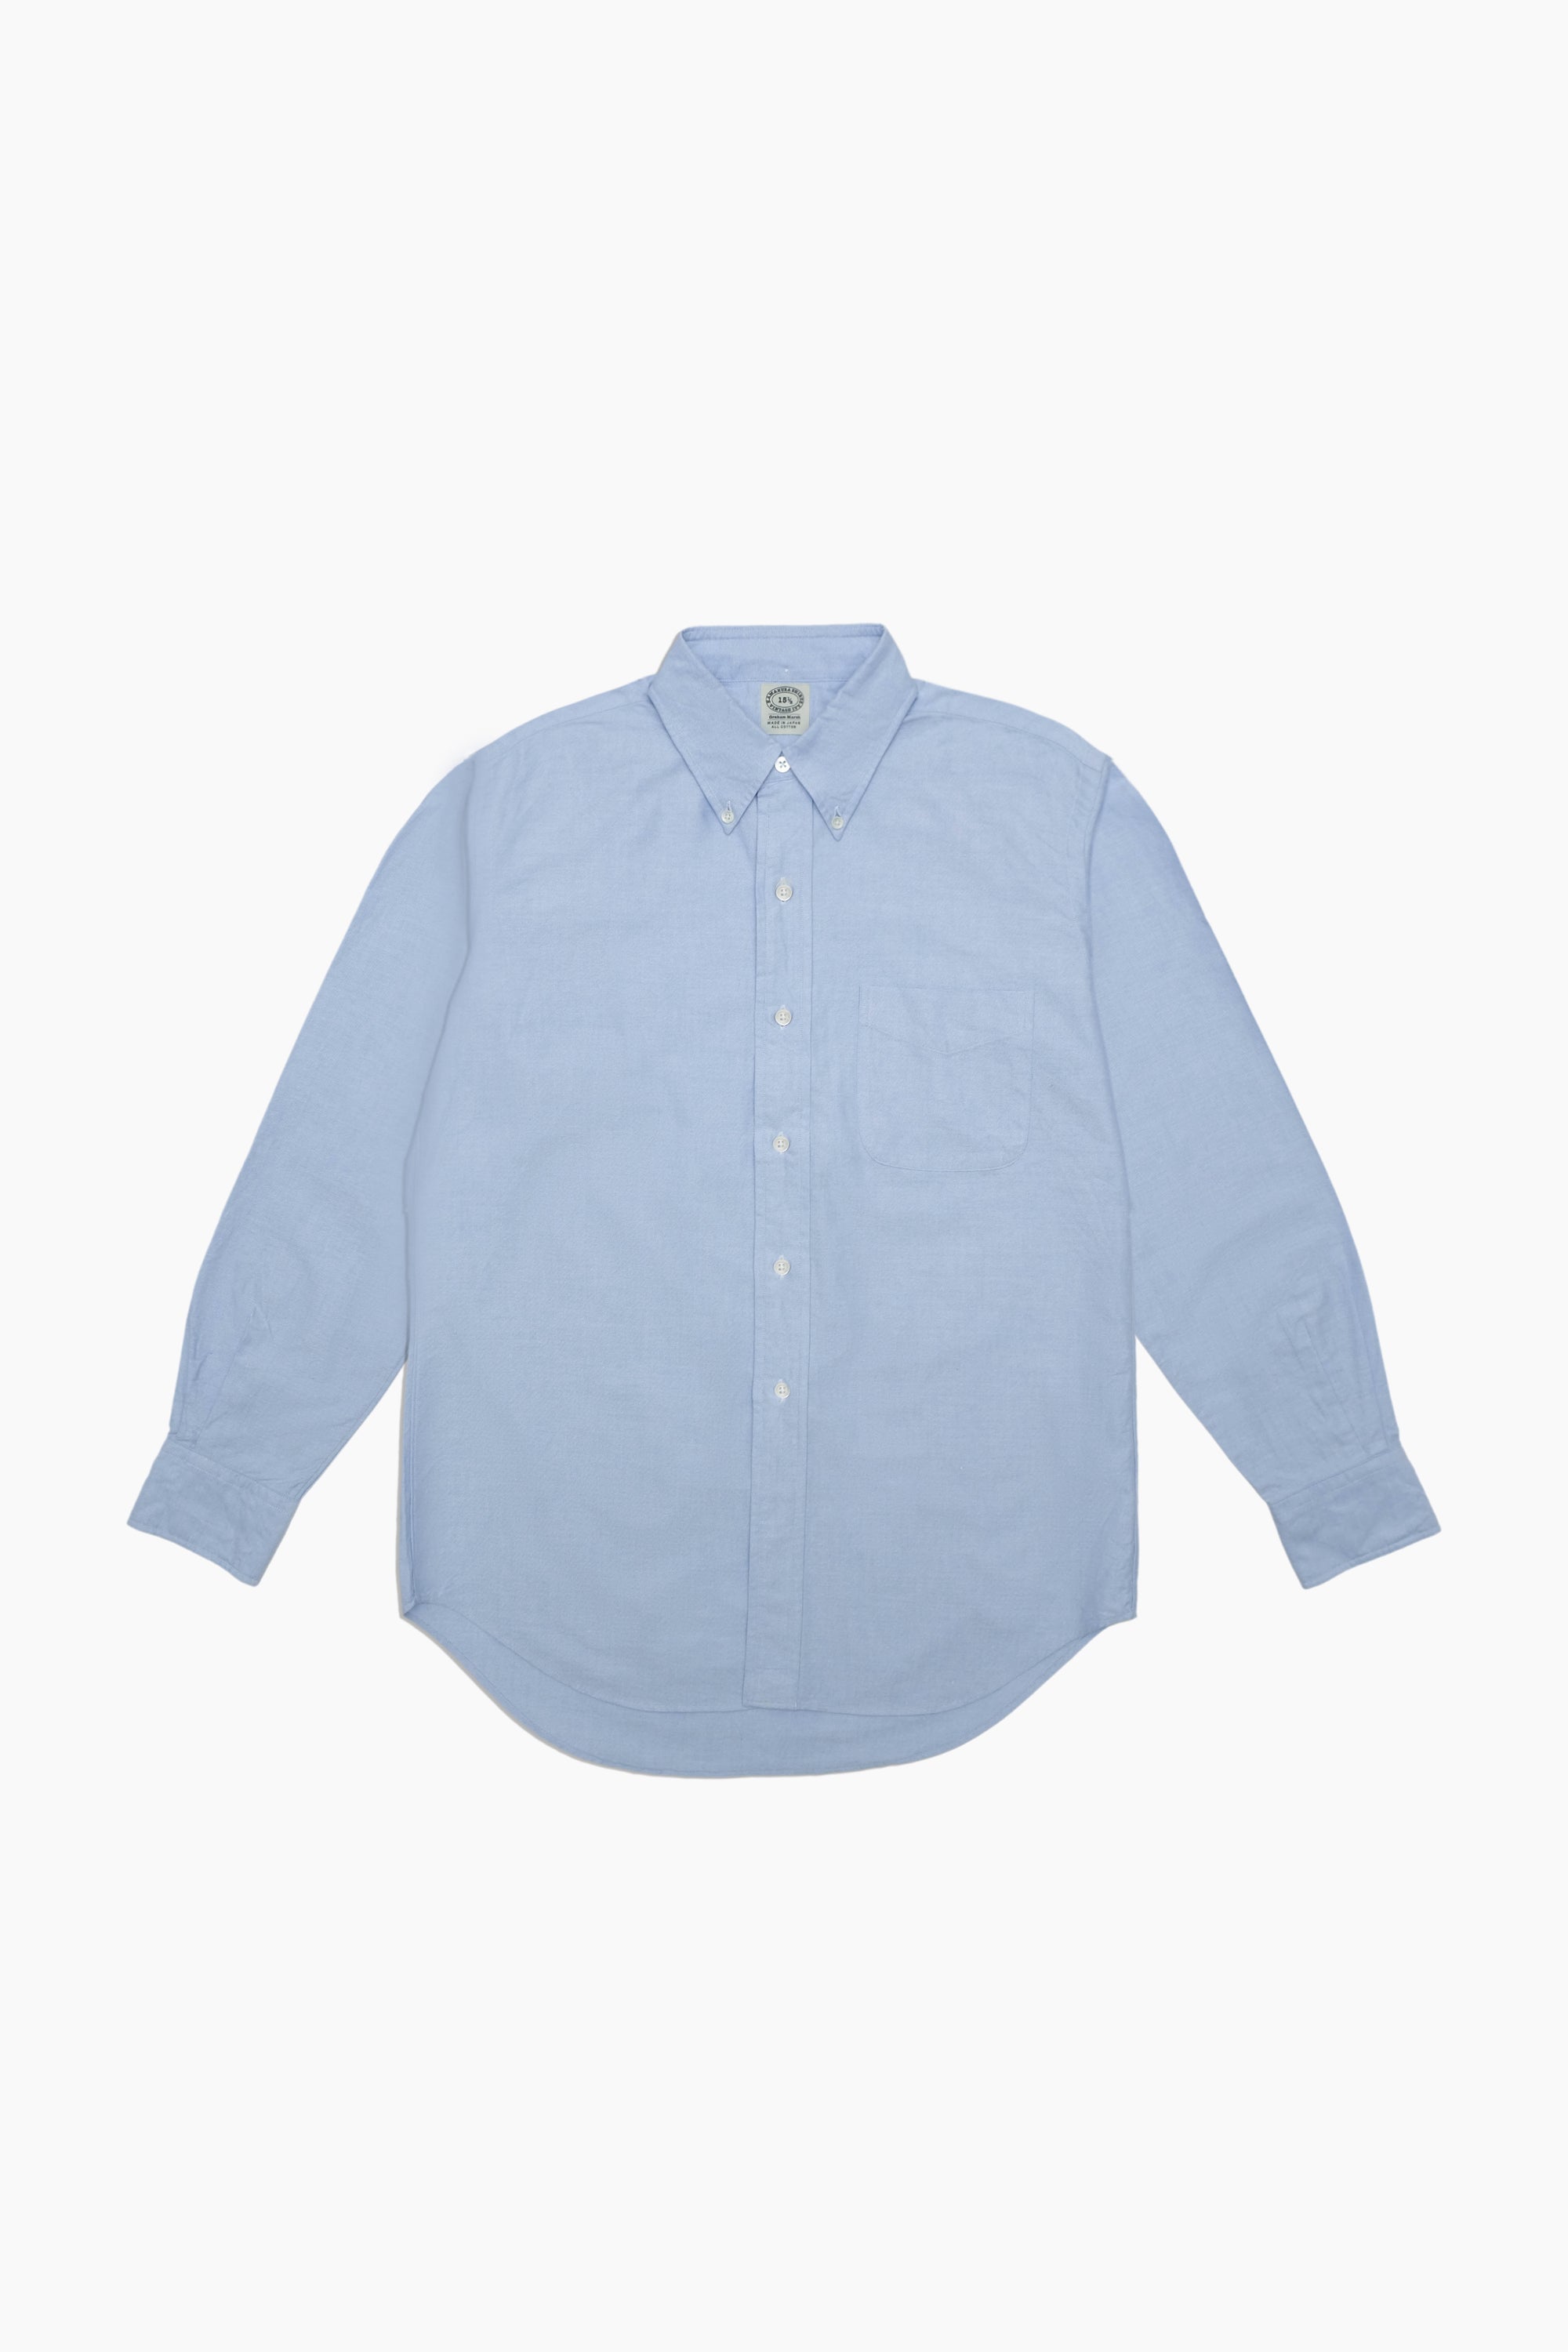 Blue - Ivy Oxford Shirt For Men